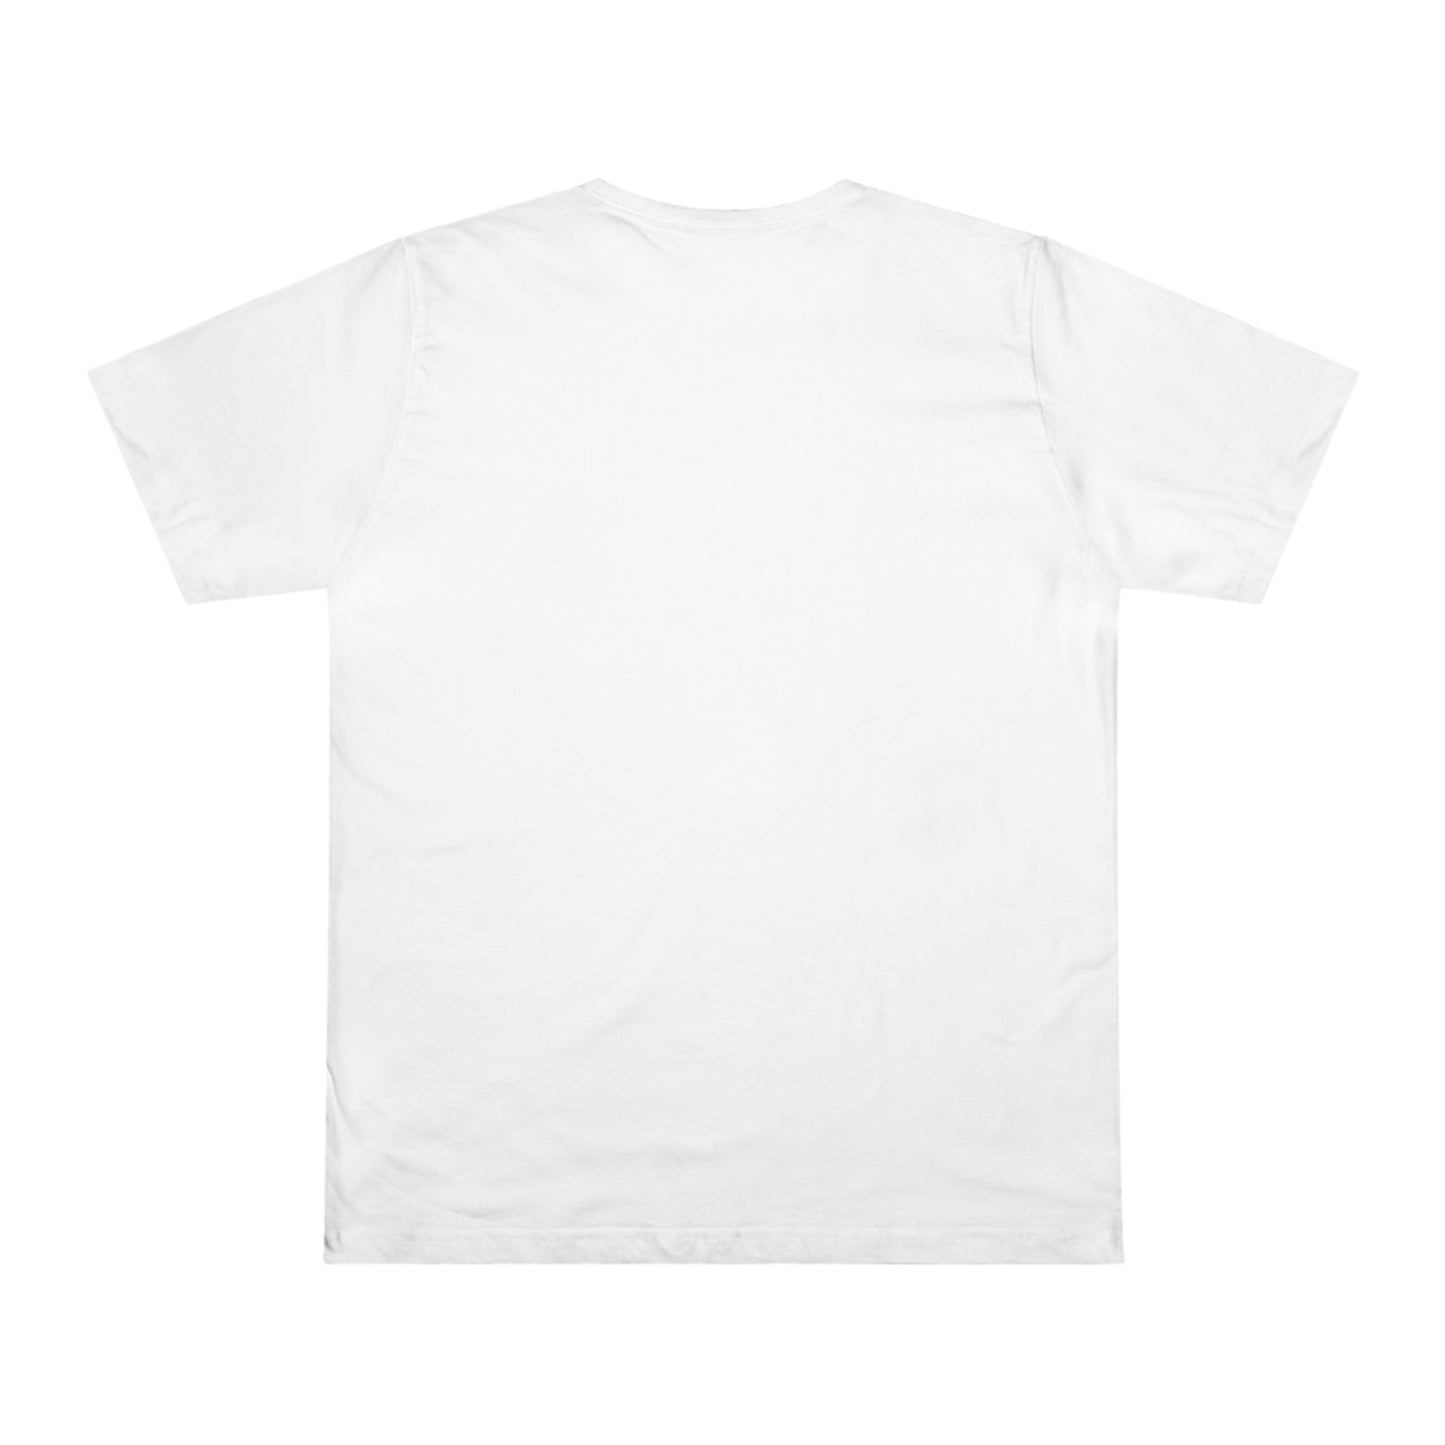 Circle Of Life T-shirt